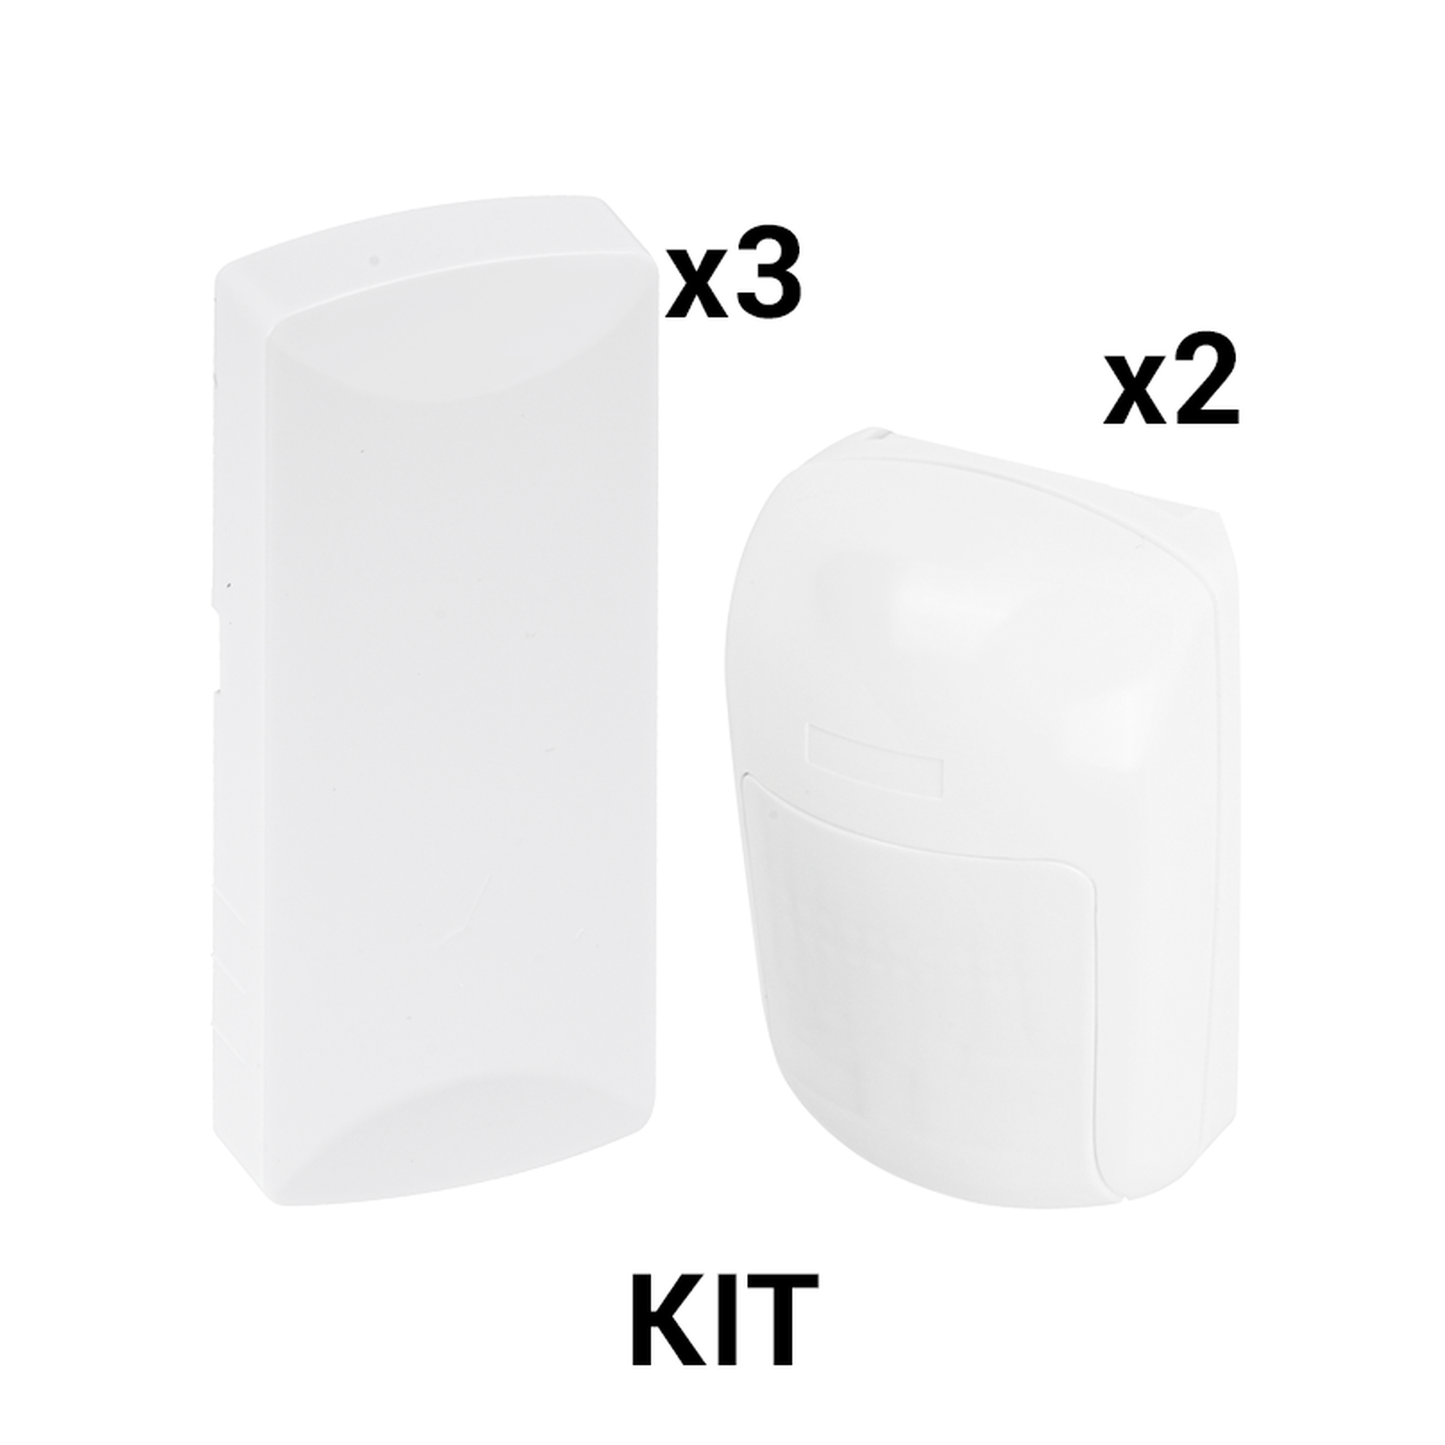 KIT Básico Sensores Inalámbricos - Incluye 3 Contactos Magnéticos y 2 PIR - Compatibles con Honeywell y PRO4GEN2